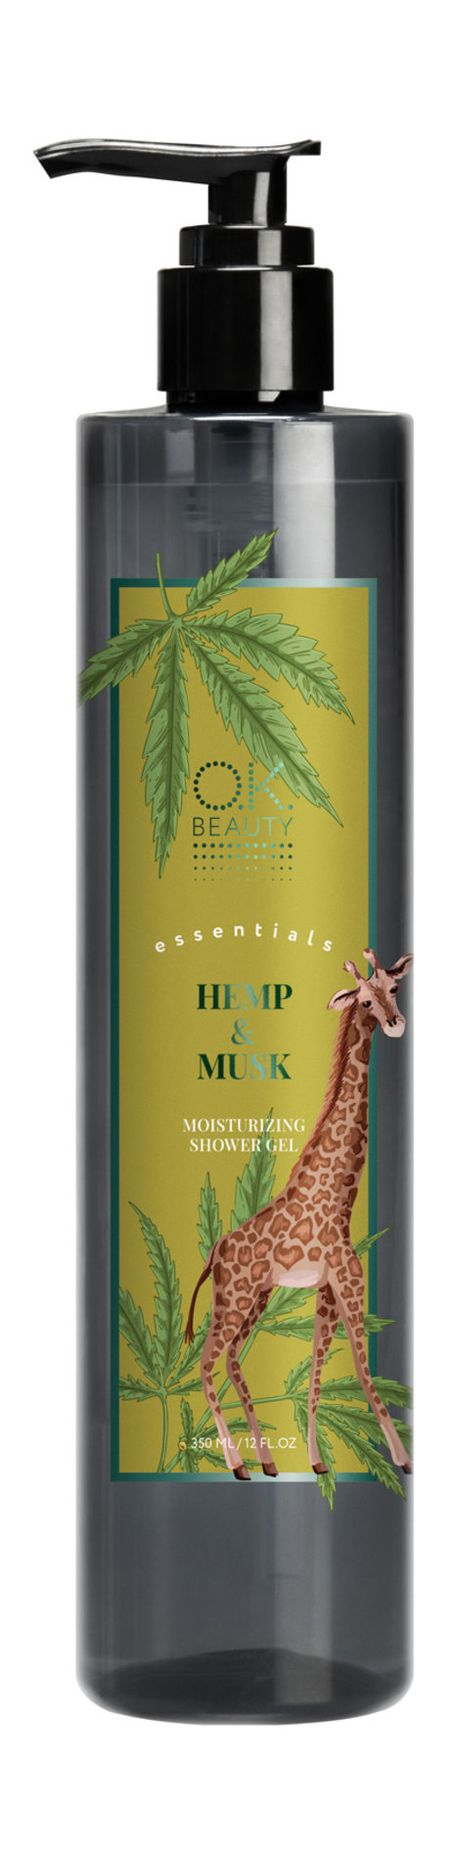 o.k.beauty essentials hemp&musk moisturizing shower gel